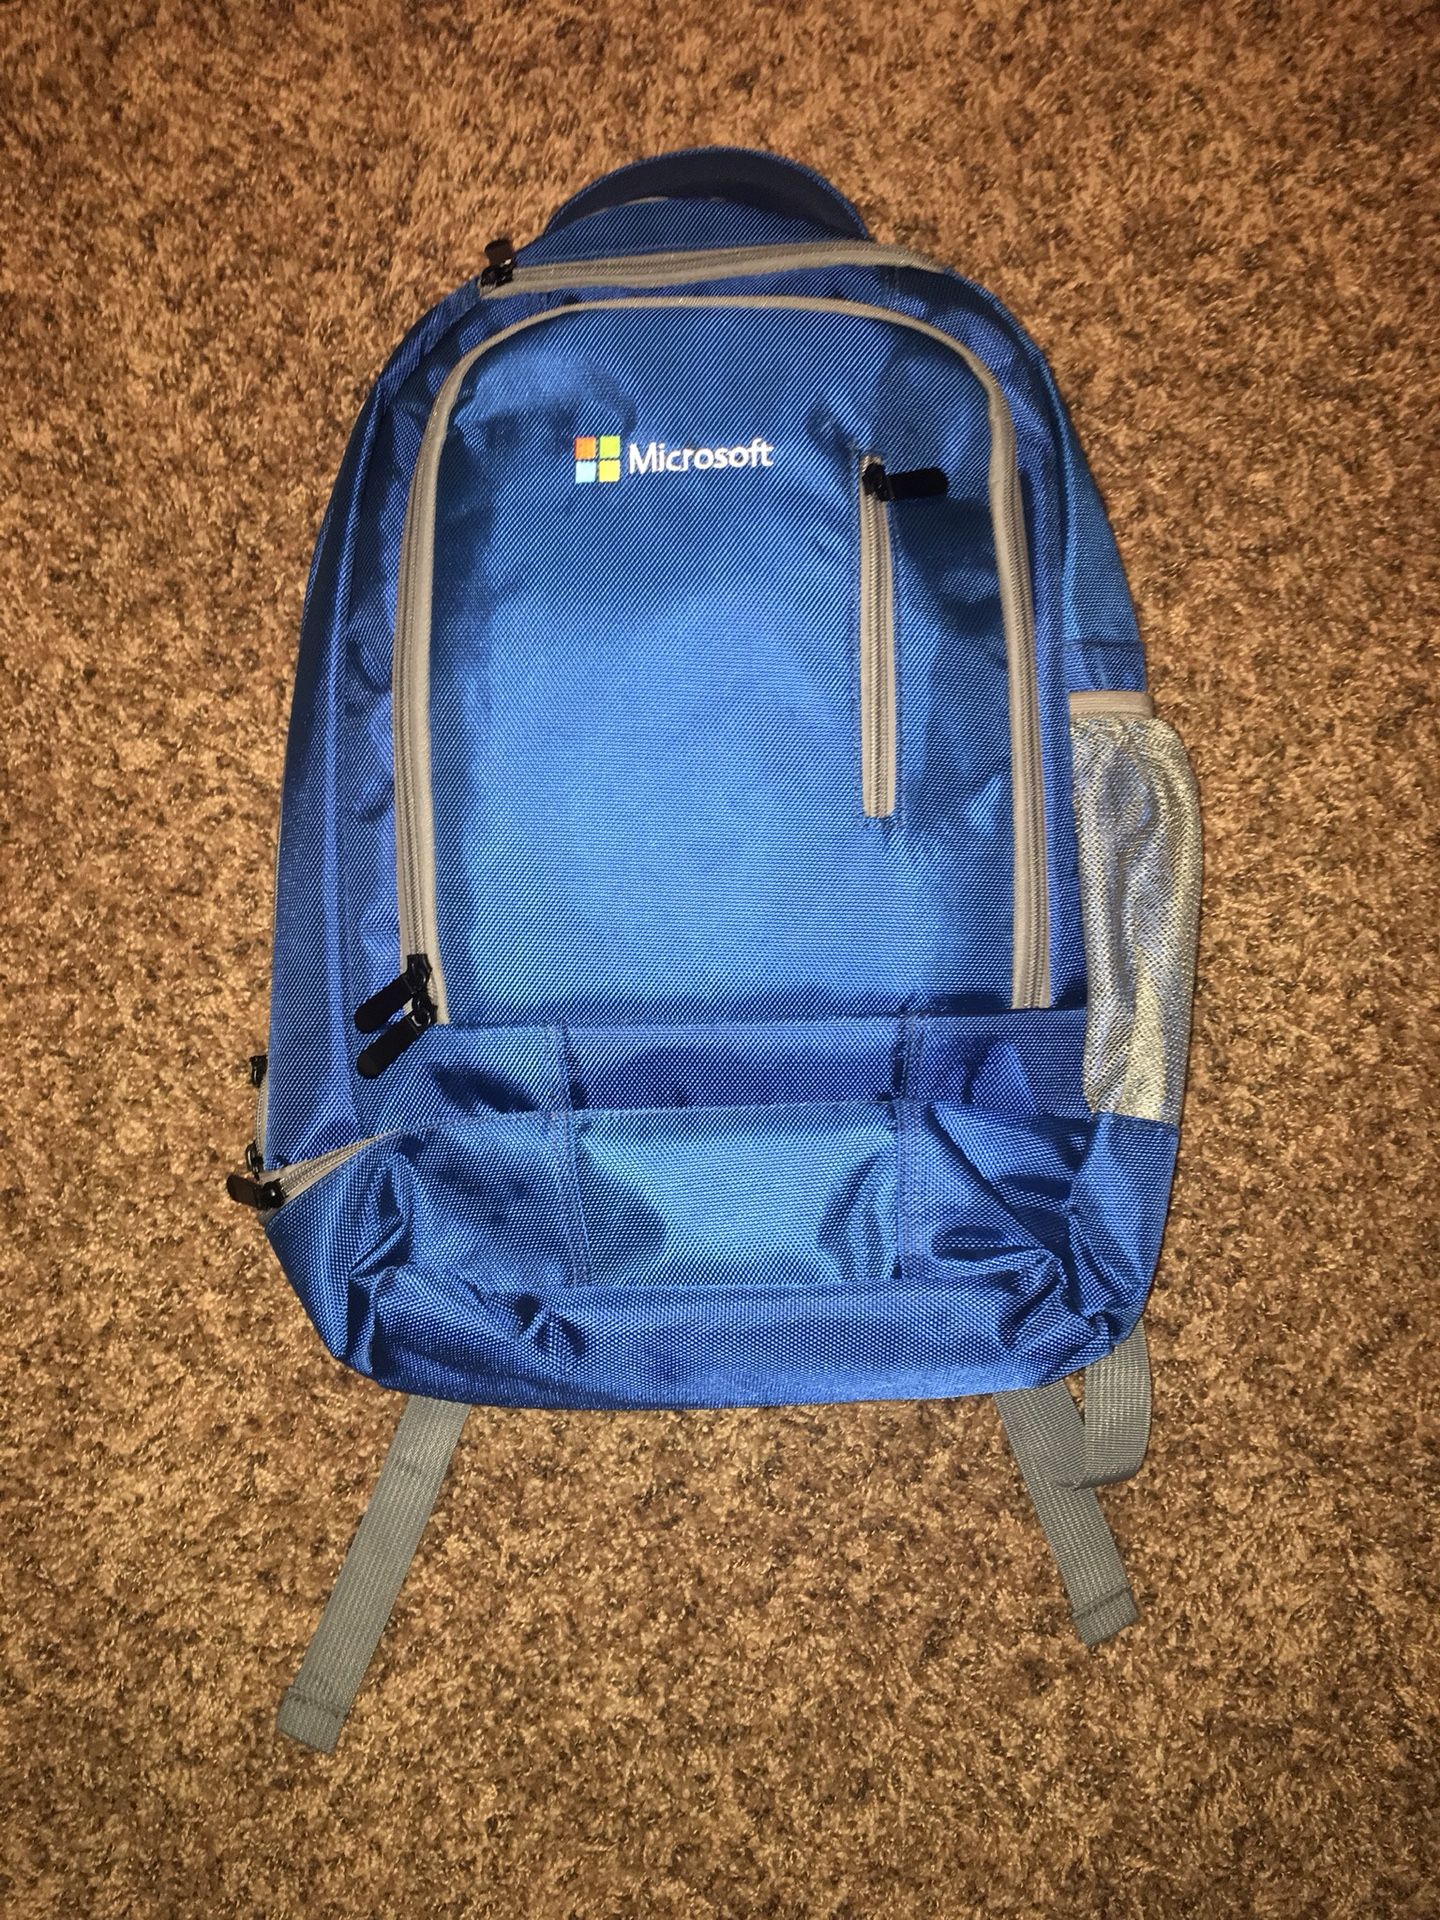 New Microsoft Backpack